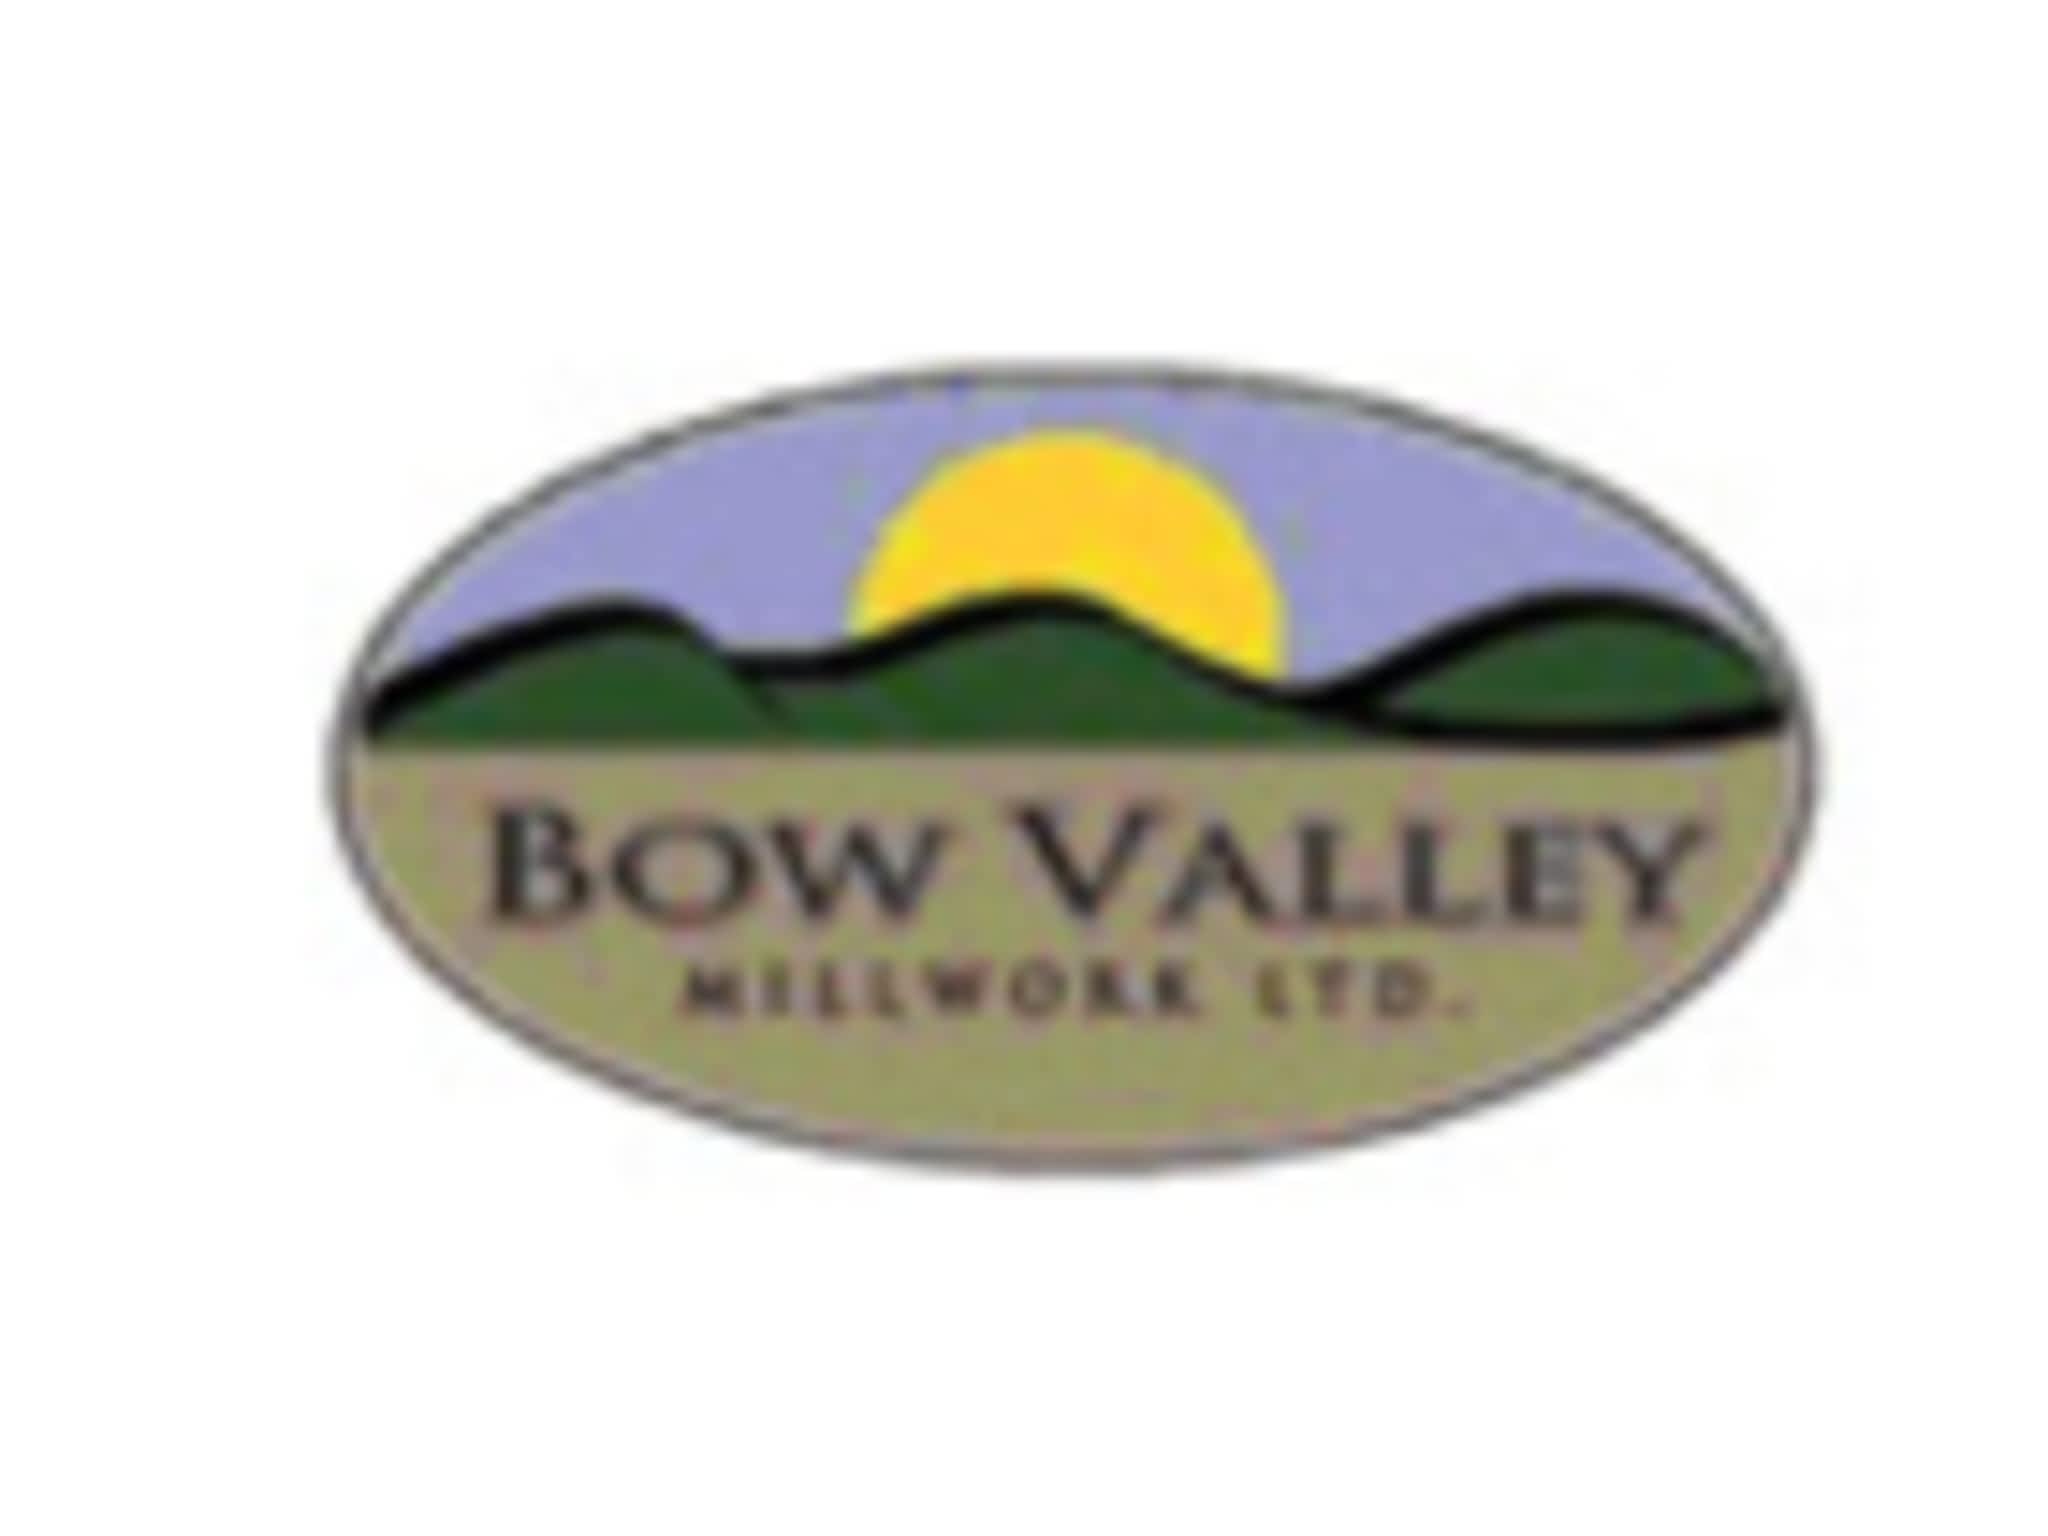 photo Bow Valley Millwork Ltd